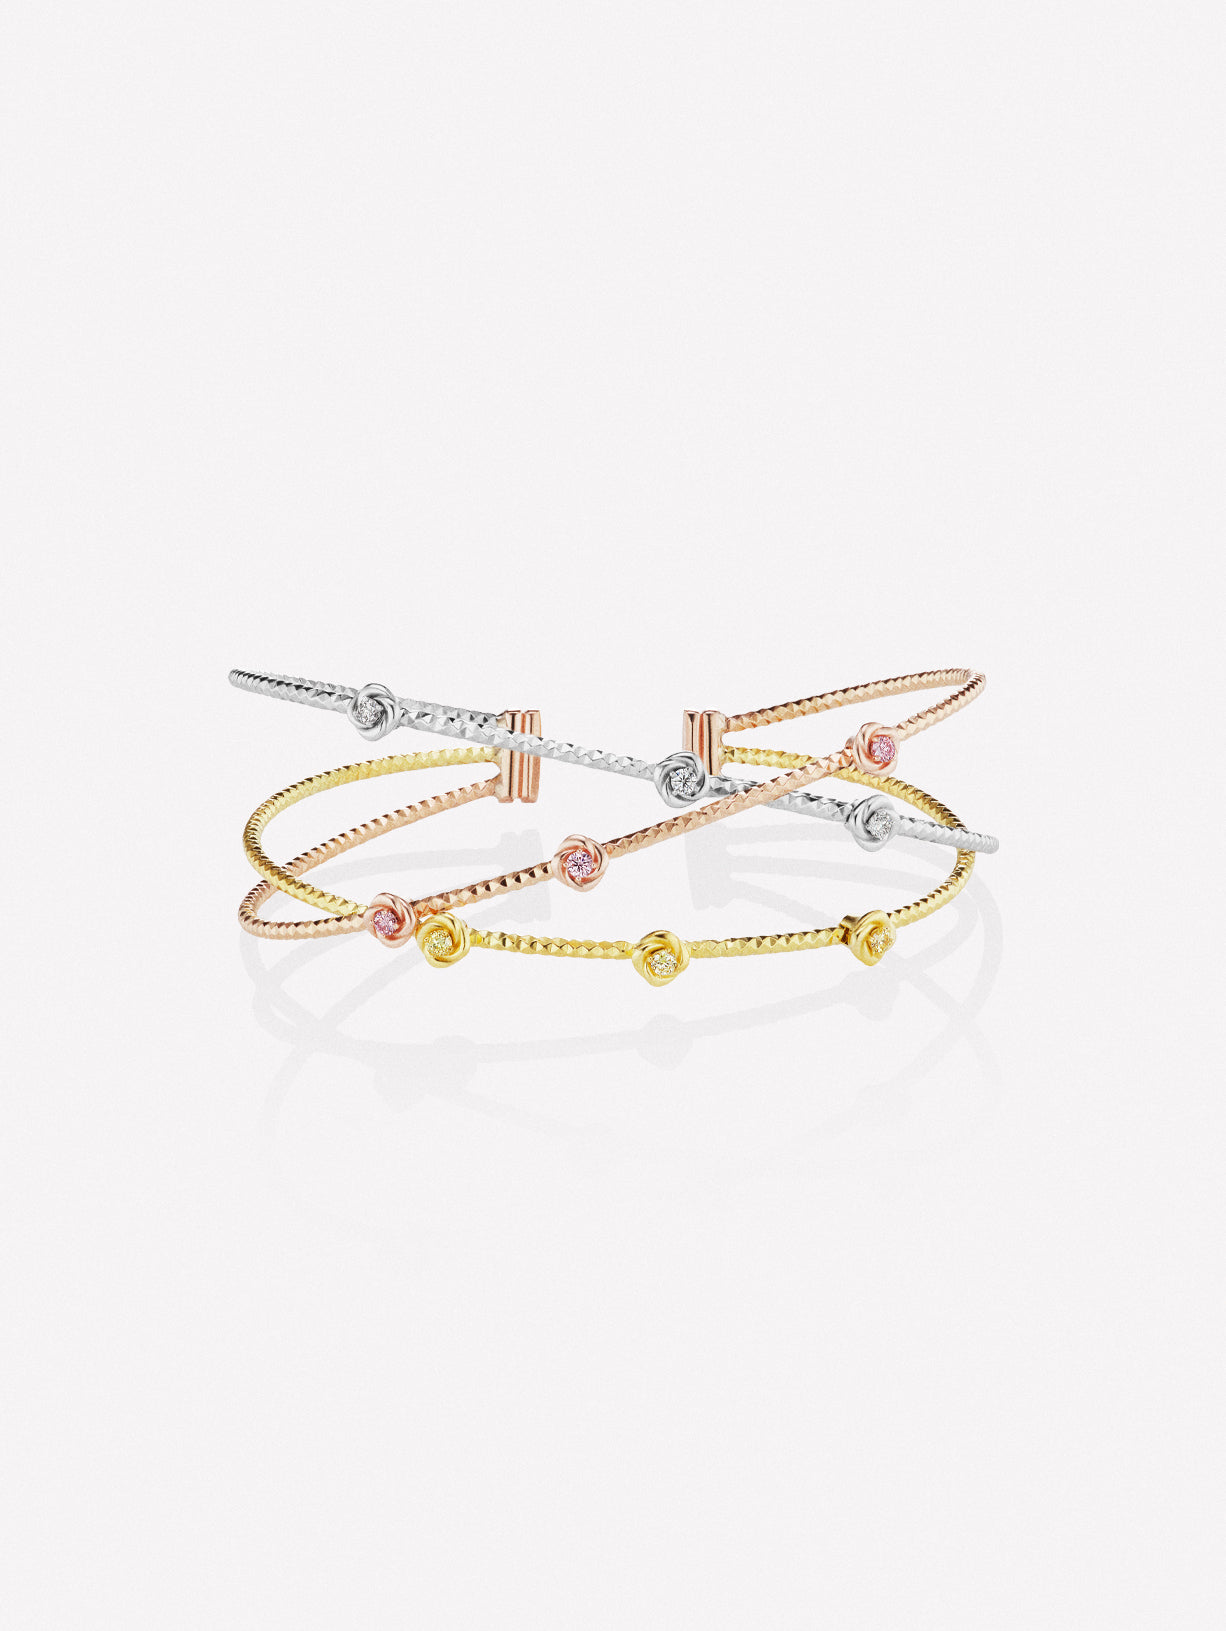 Pink yellow and white diamond cuff bracelet